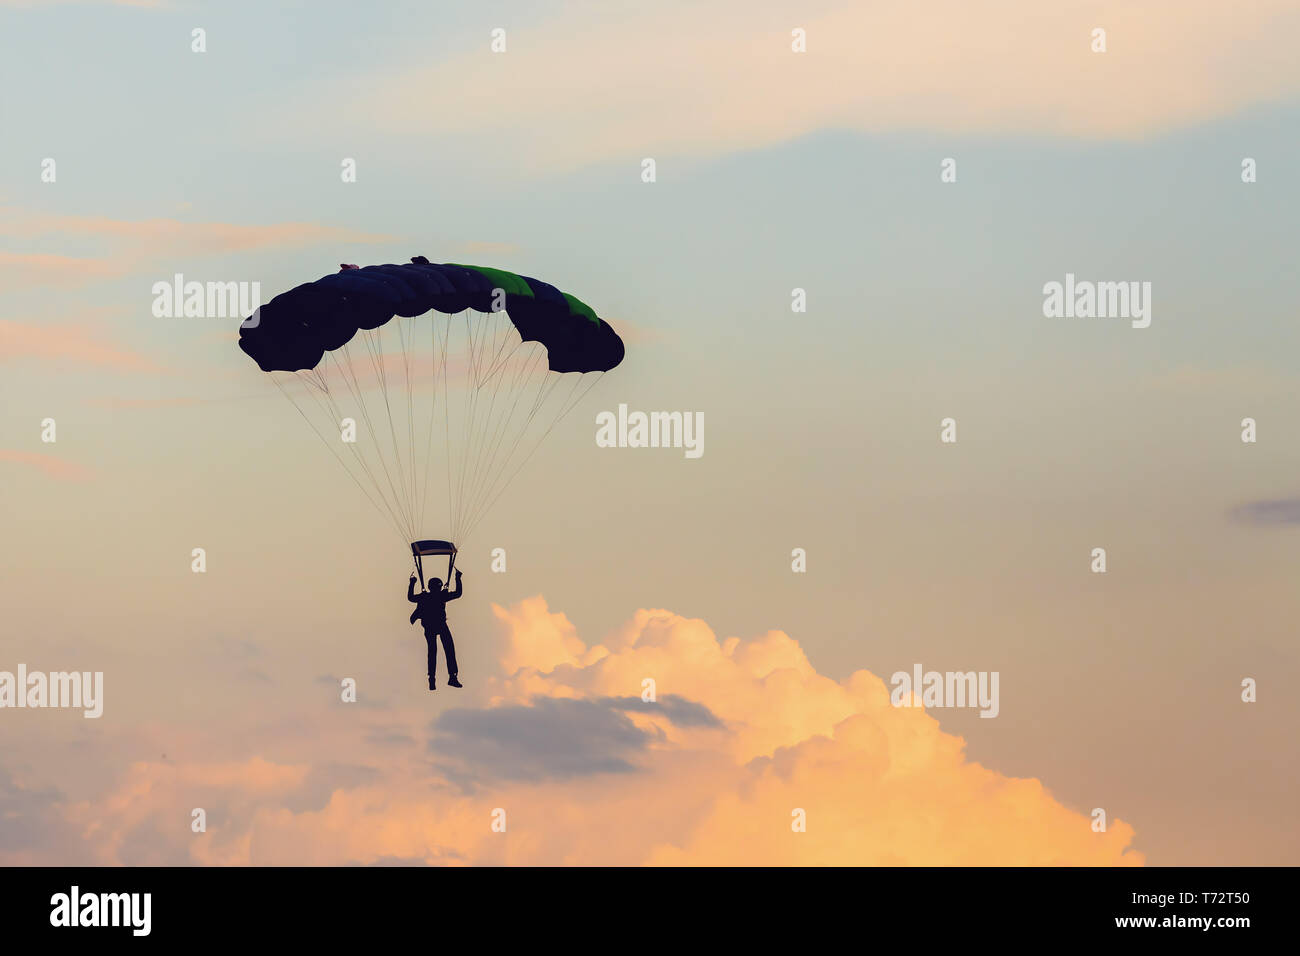 Sport parachutisme dans sunset sky Banque D'Images